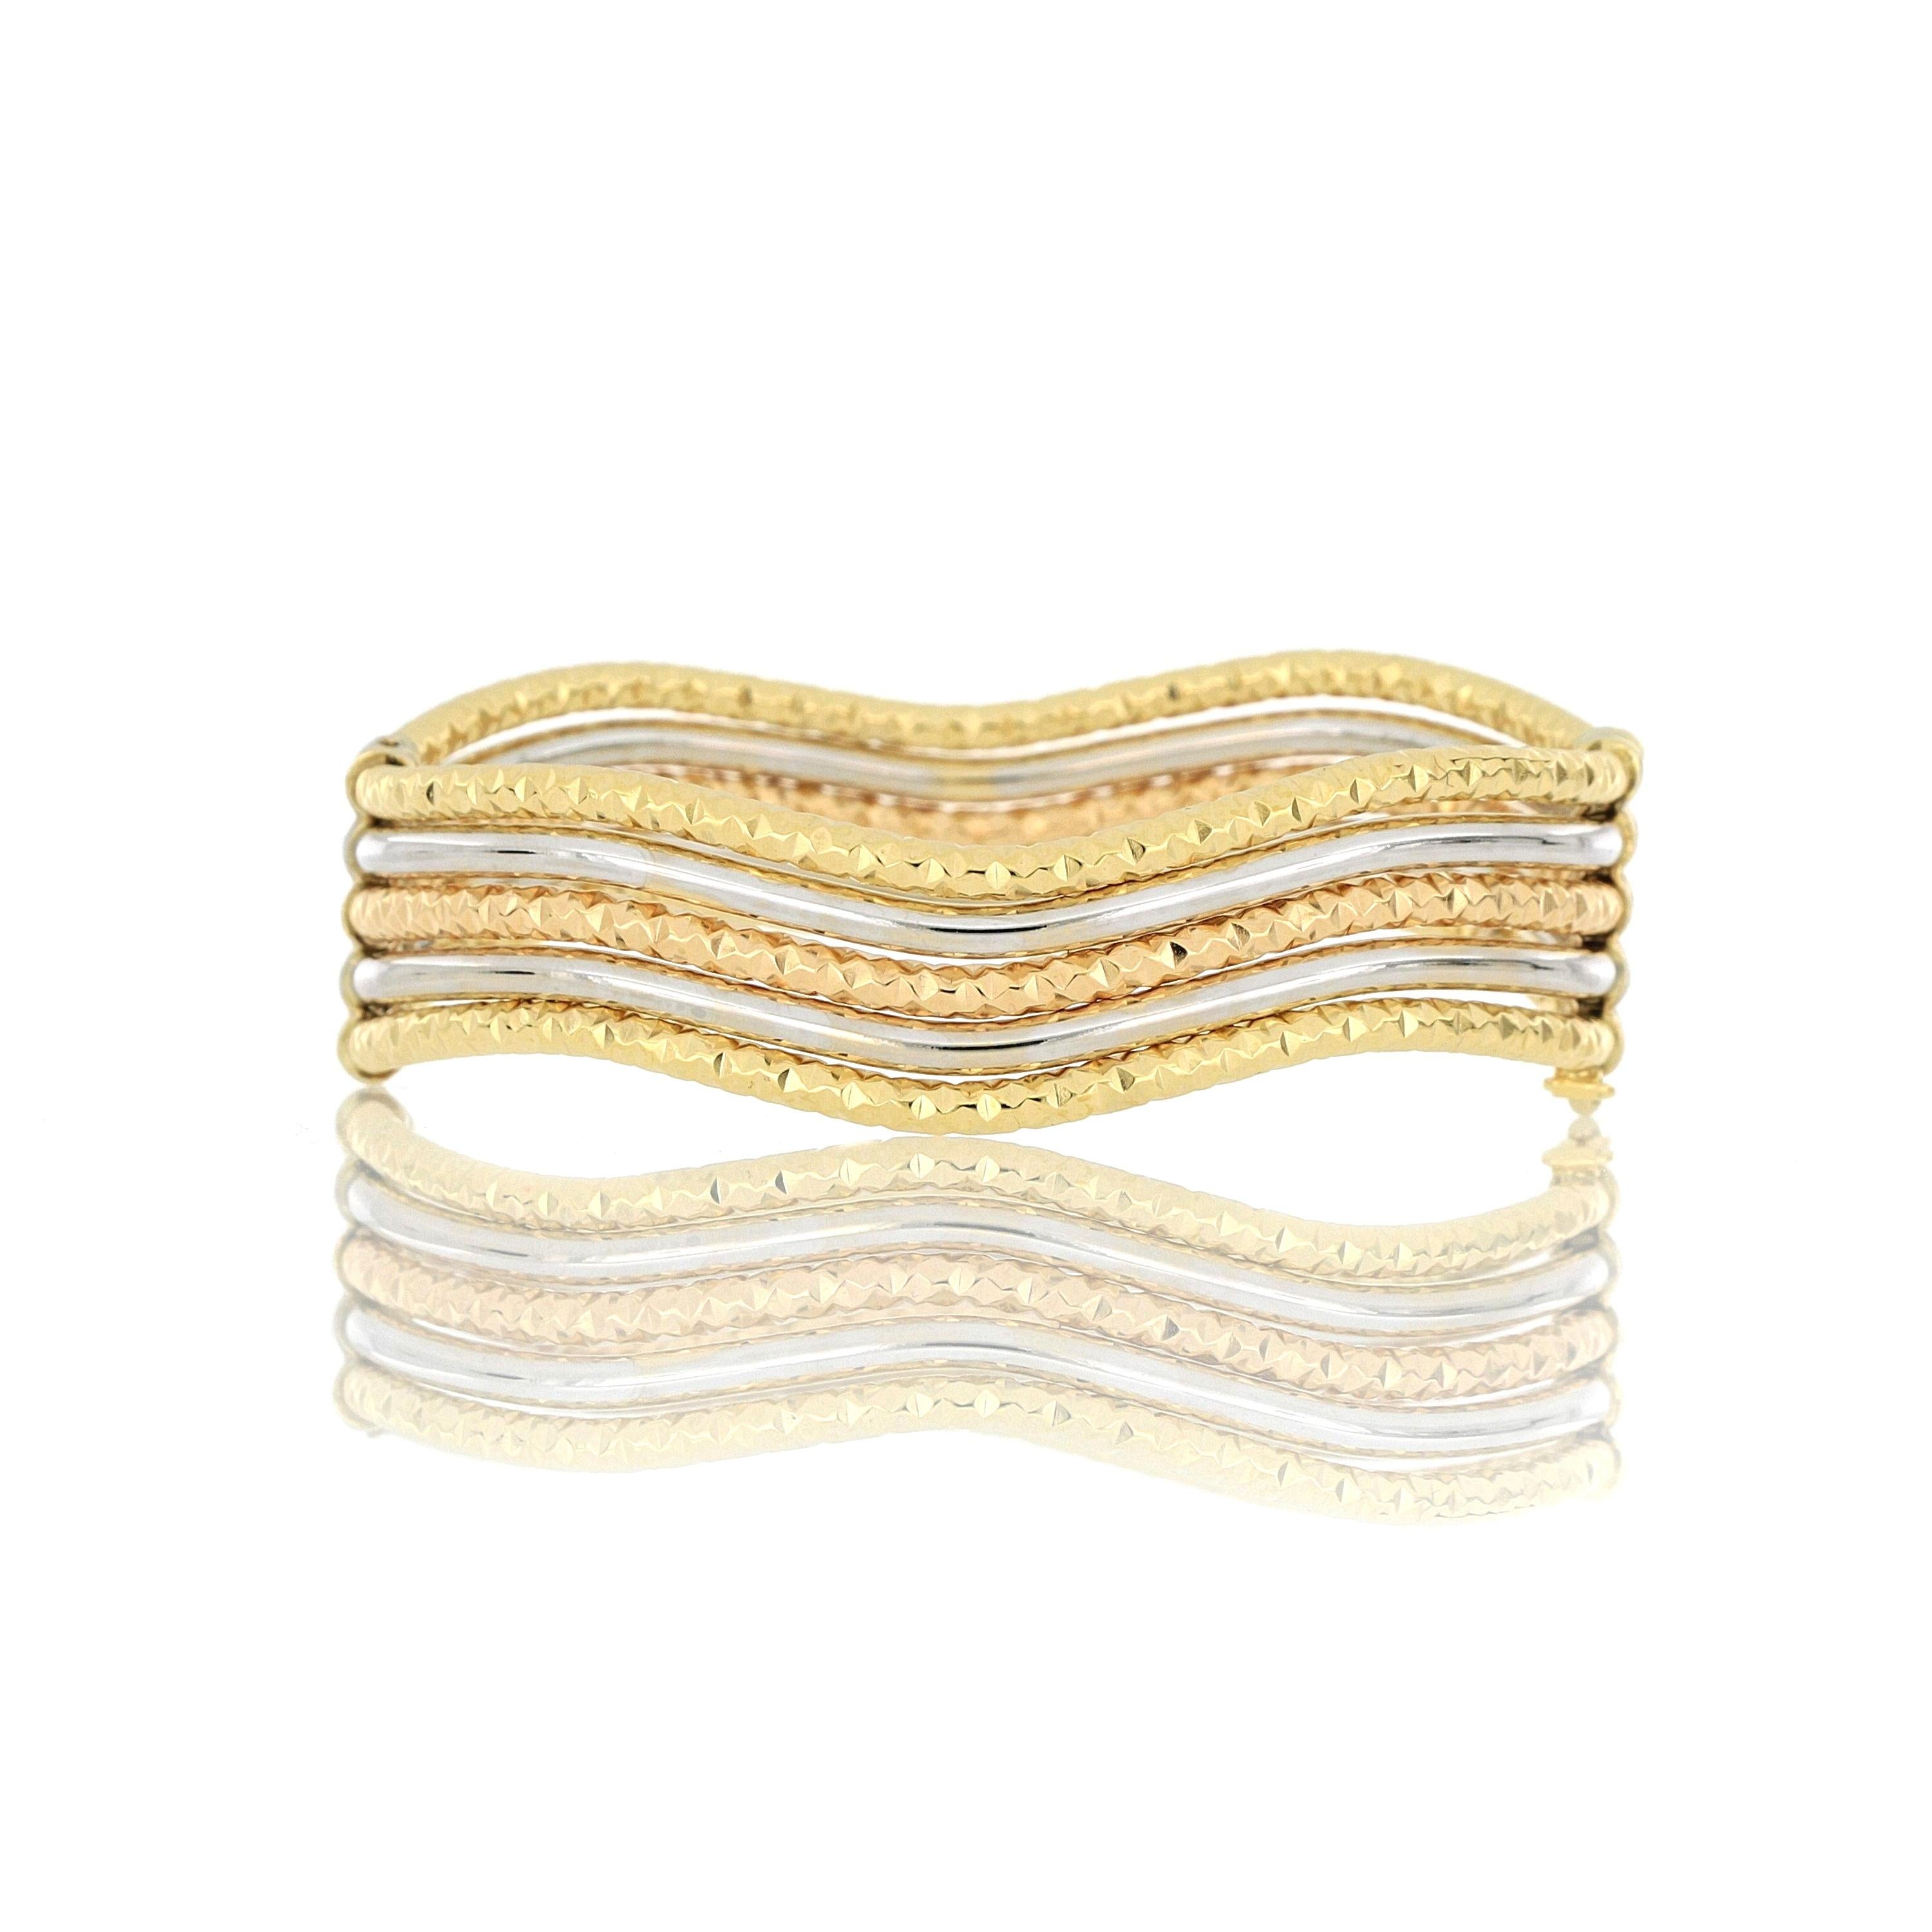 Un élégant bracelet tricolore en or 18 carats, de fabrication italienne, composé d'or blanc, d'or jaune et d'or rose, qui peut être porté en toute occasion.
O'Che 1867 est née il y a un siècle et demi à Macao. La marque est réputée pour ses